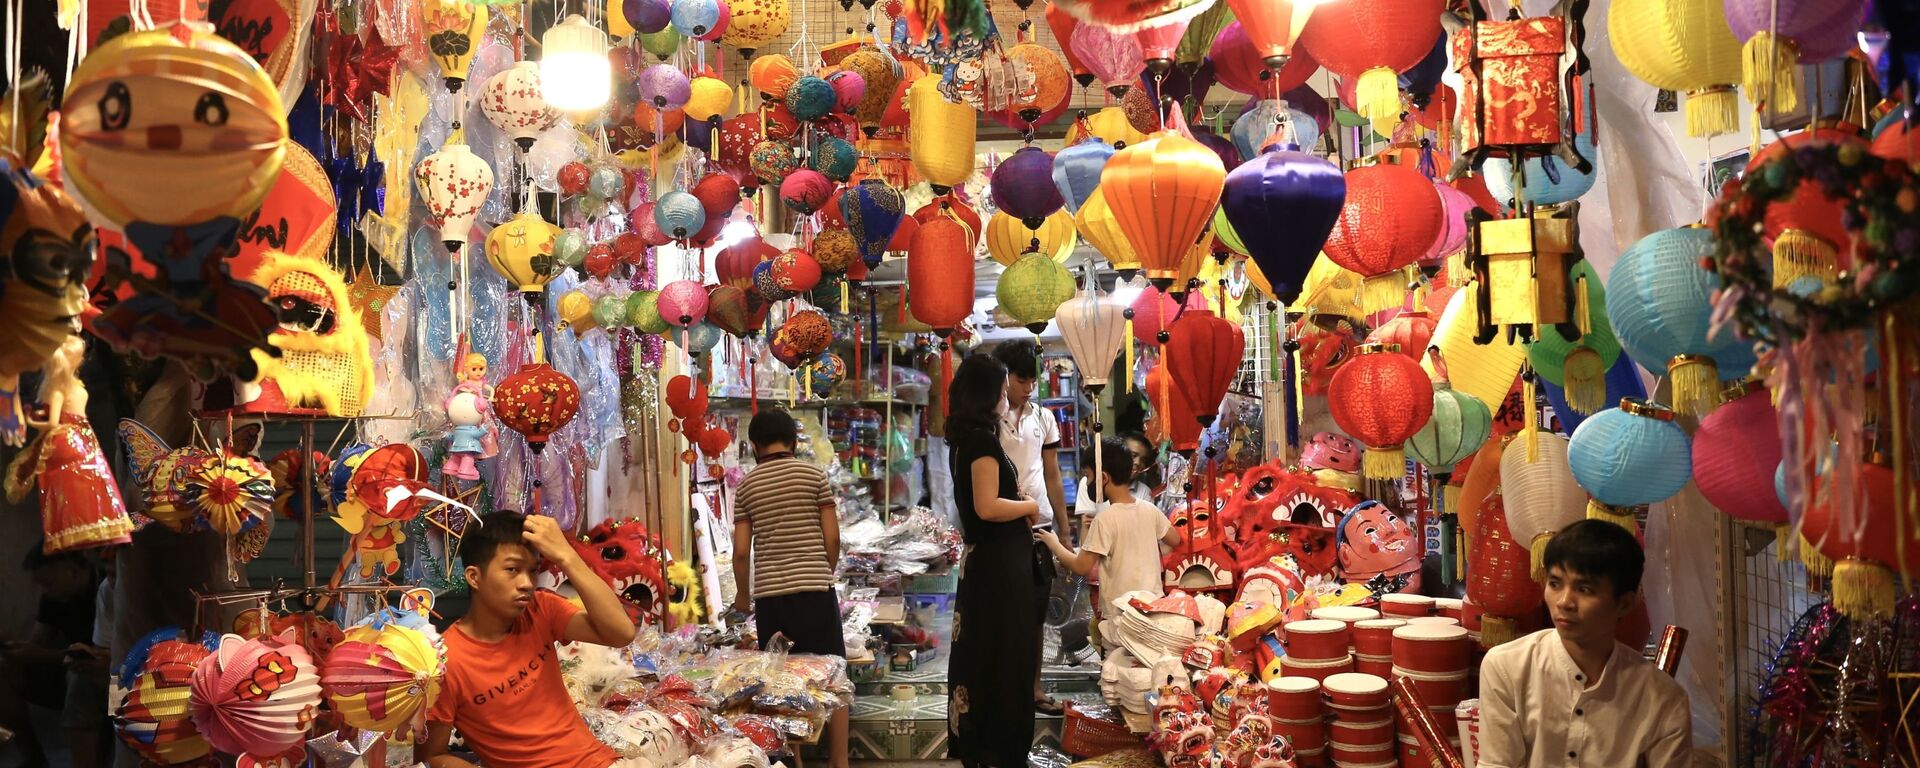 Một cửa hàng đầy màu sắc tại không gian “chợ Trung thu truyền thống”. - Sputnik Việt Nam, 1920, 02.10.2020